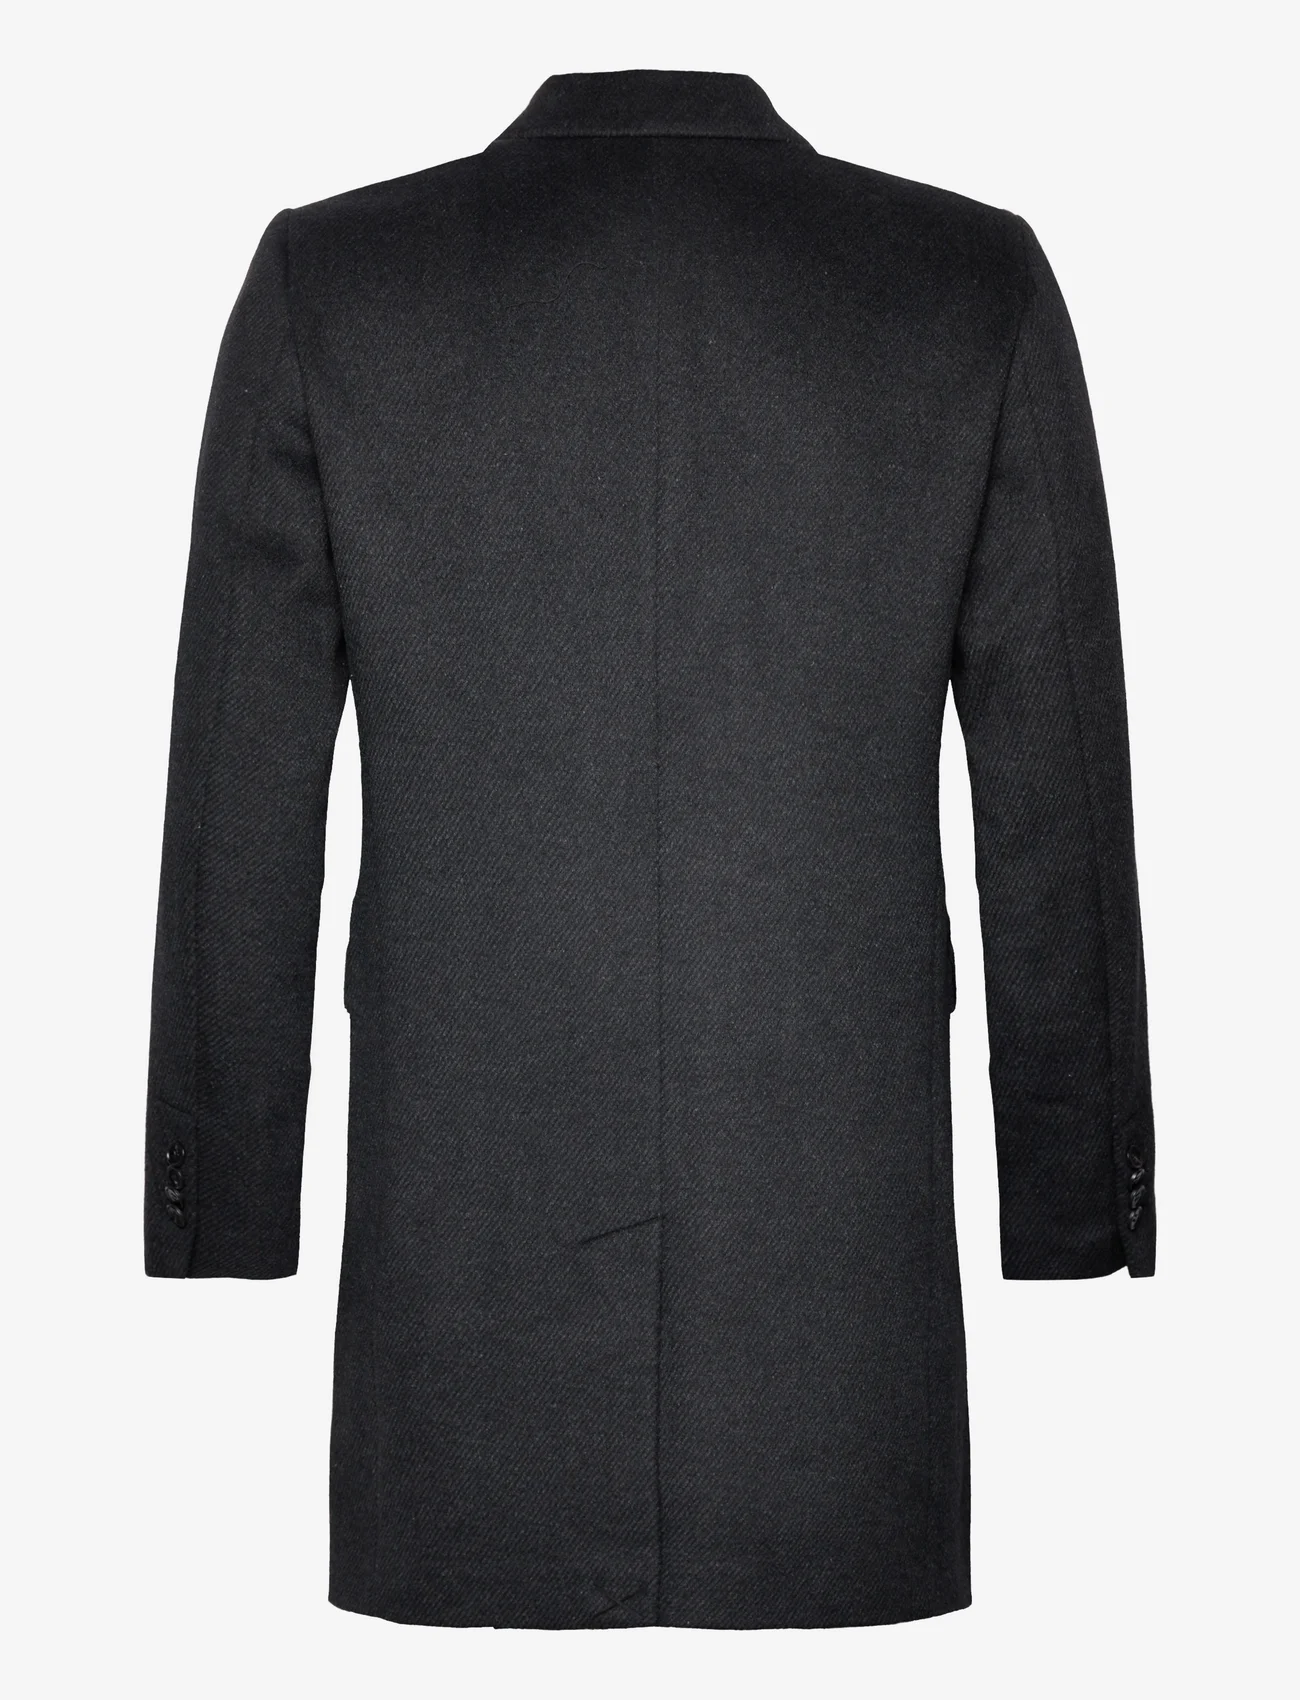 Bruuns Bazaar - FuzzyBBDoubalina coat - vinterjakker - black melange - 1